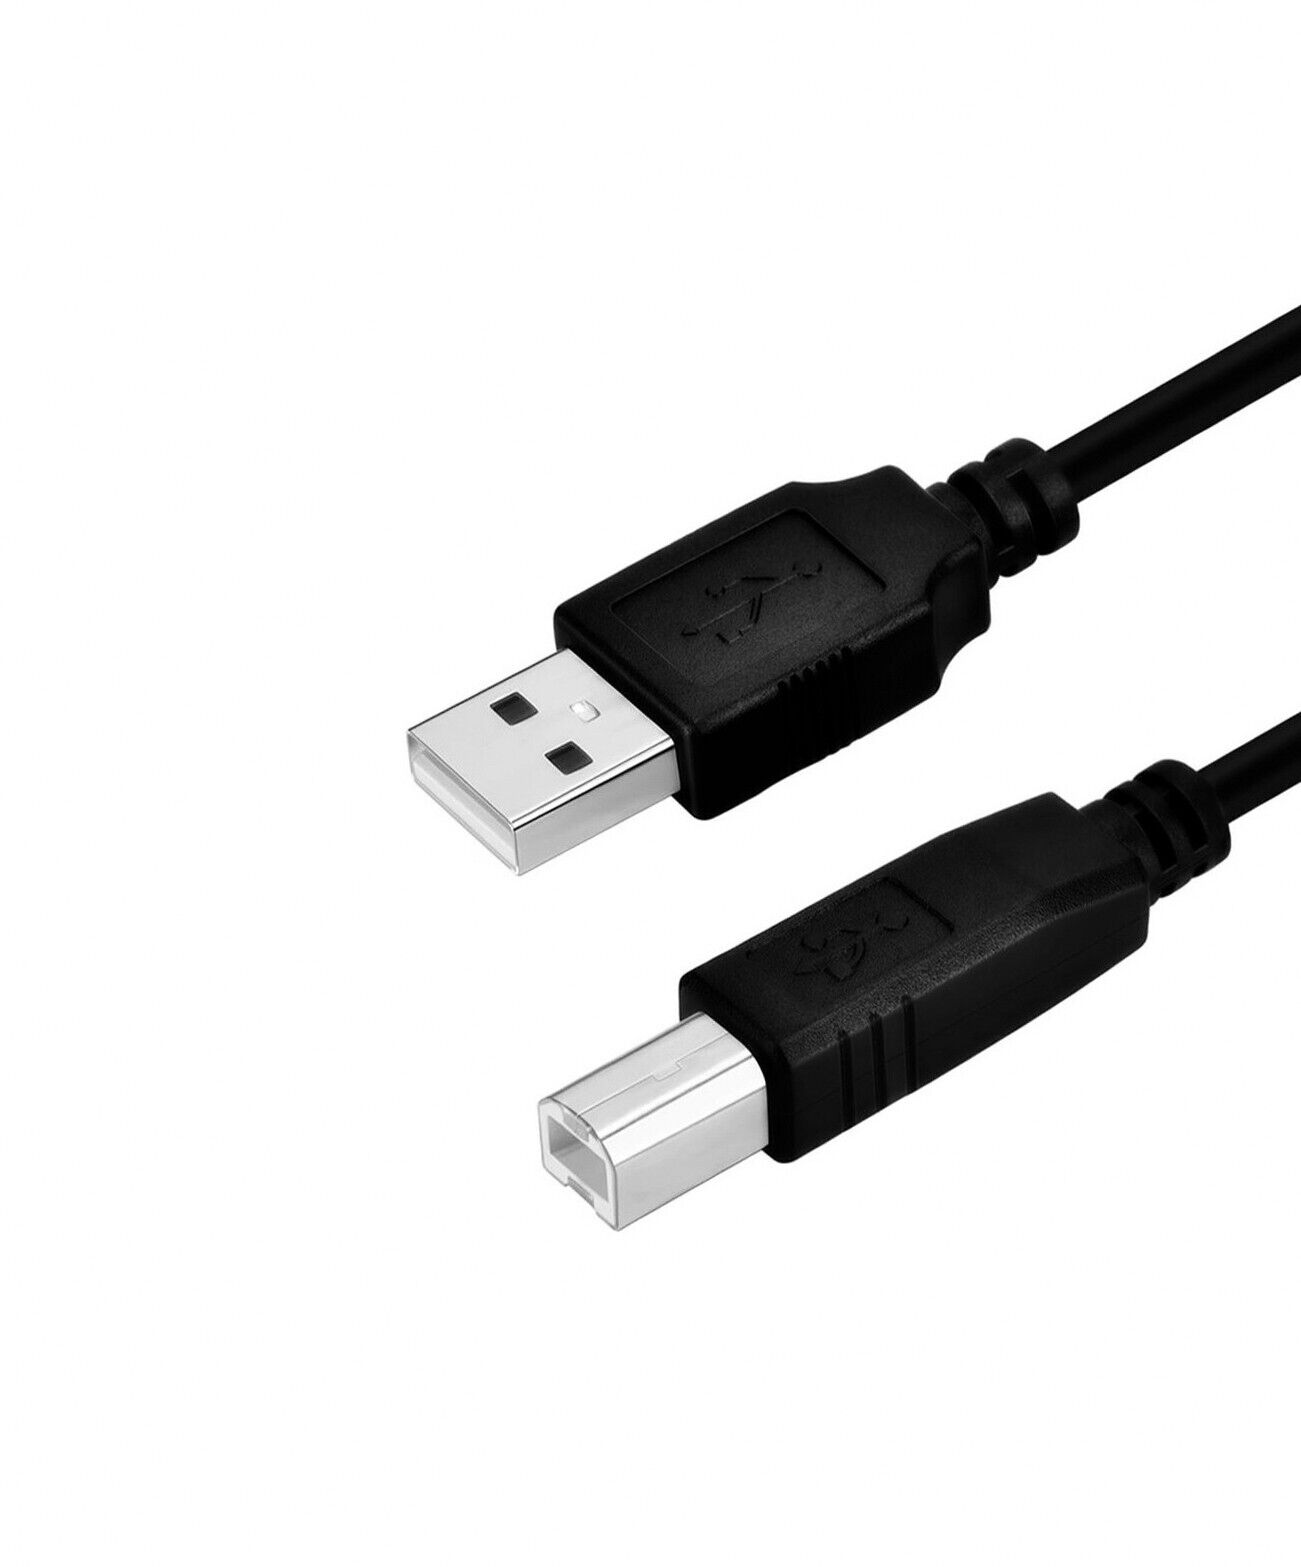 Printer Cable 6 FT USB 2.0 A to USB B. 089G 175 8 G. USB A to USB 2.0 B. Type-B